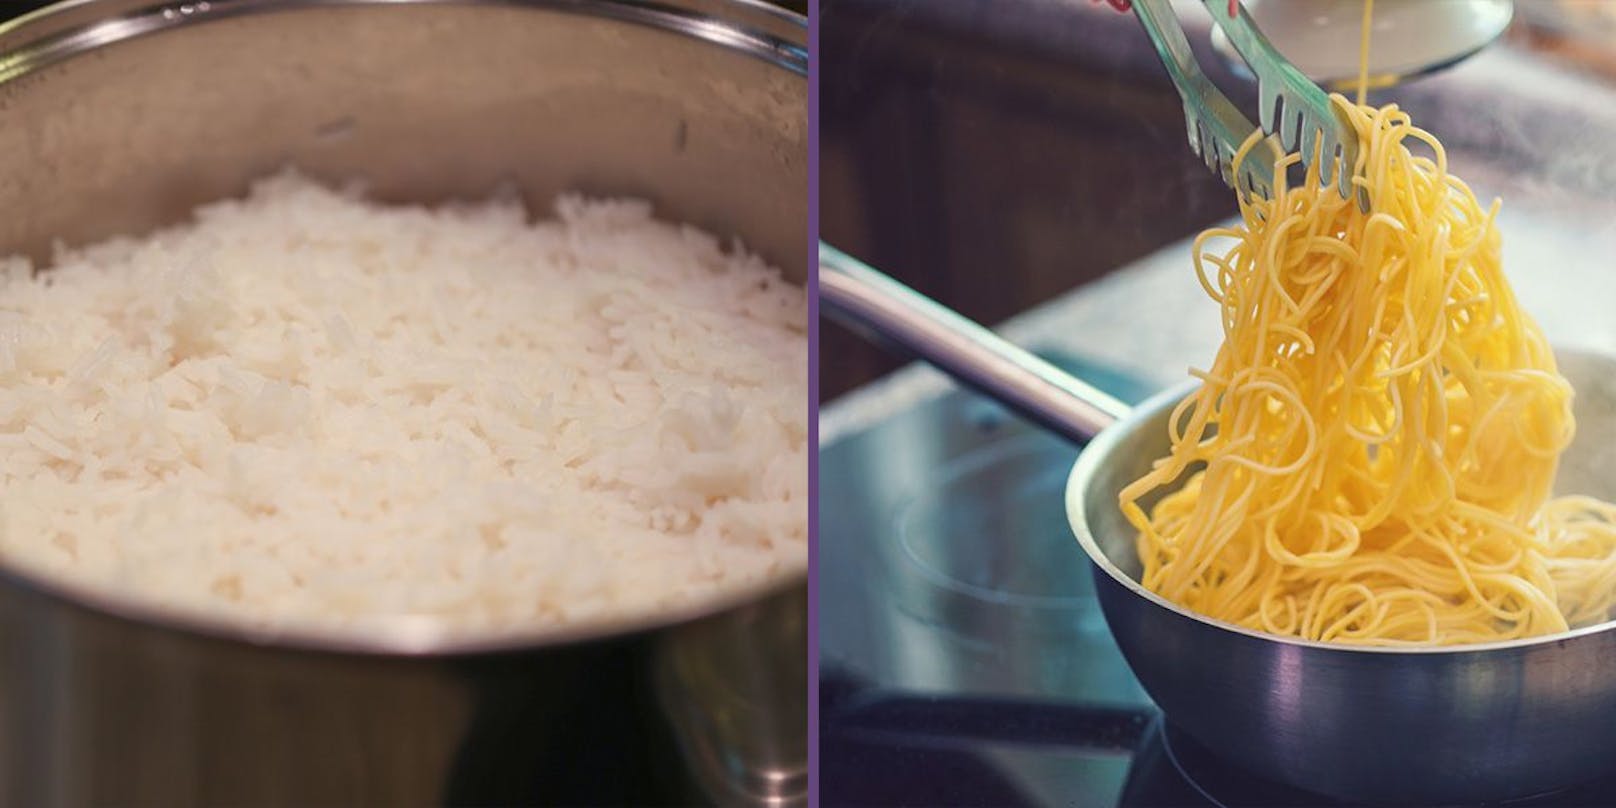 Vergiftung – wer Reis & Nudeln aufwärmt, muss aufpassen